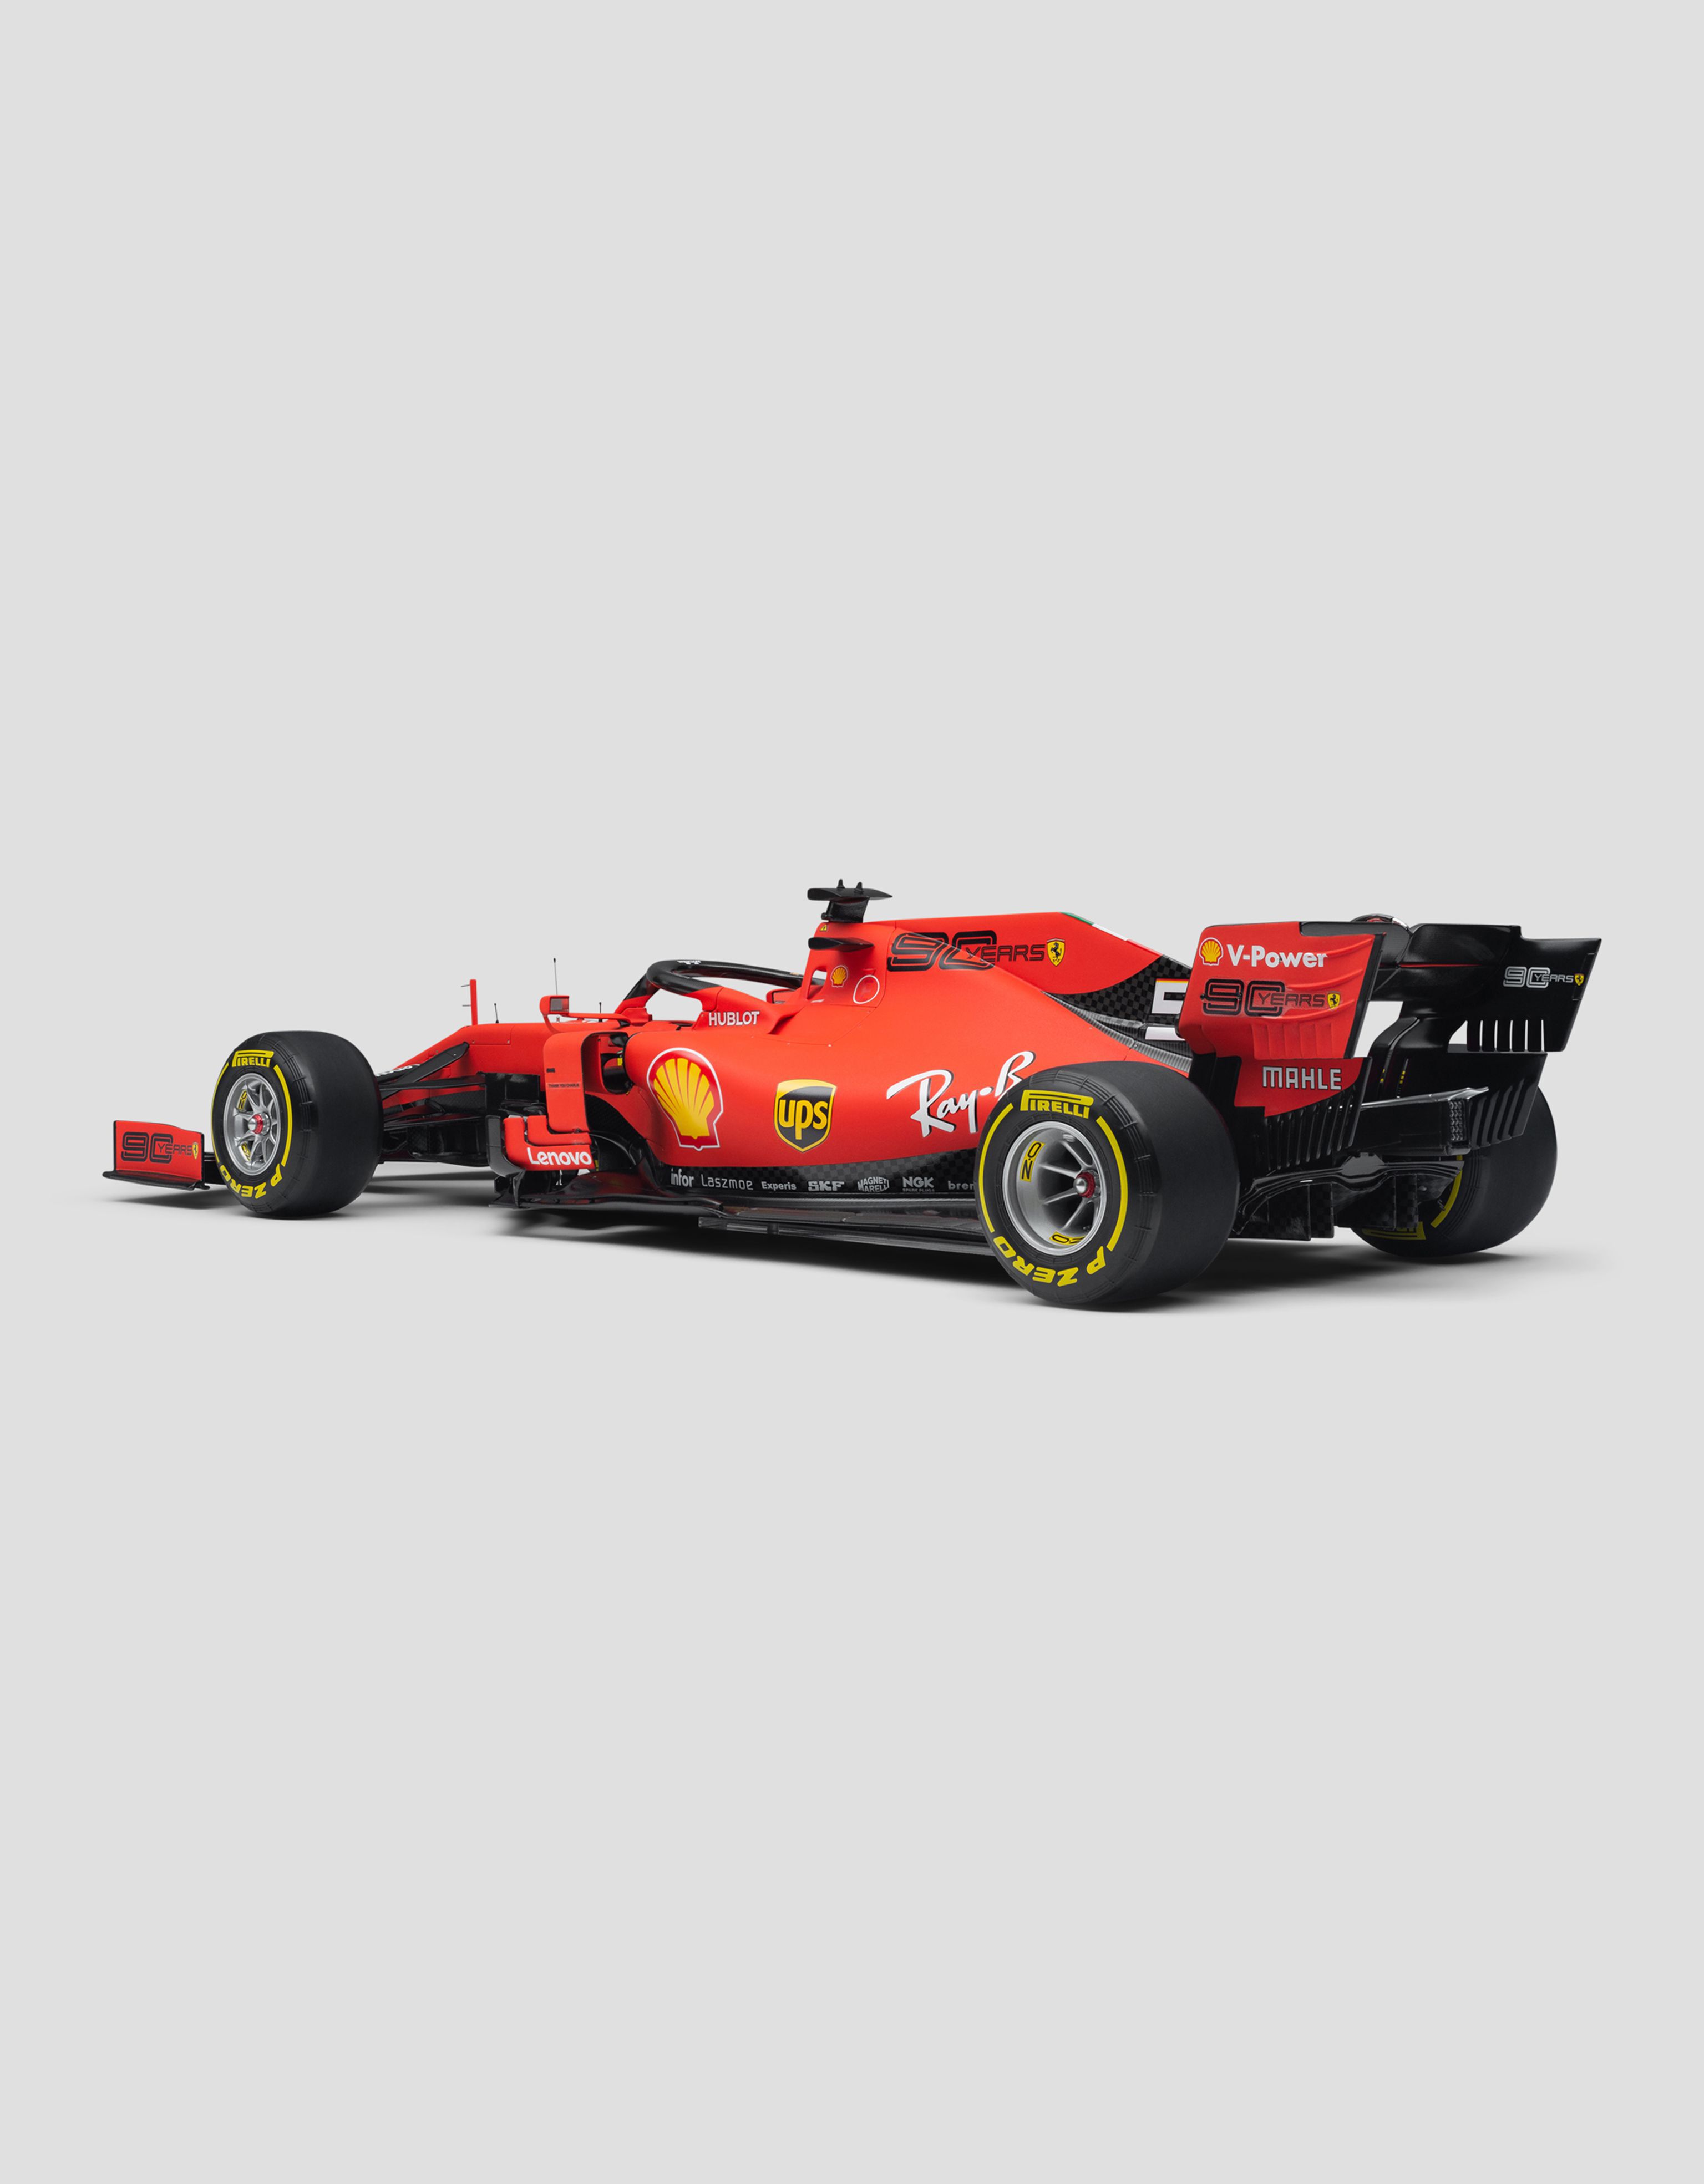 Ferrari モデルカー Ferrari SF90 Vettel スケール 1/8 レッド L7981f